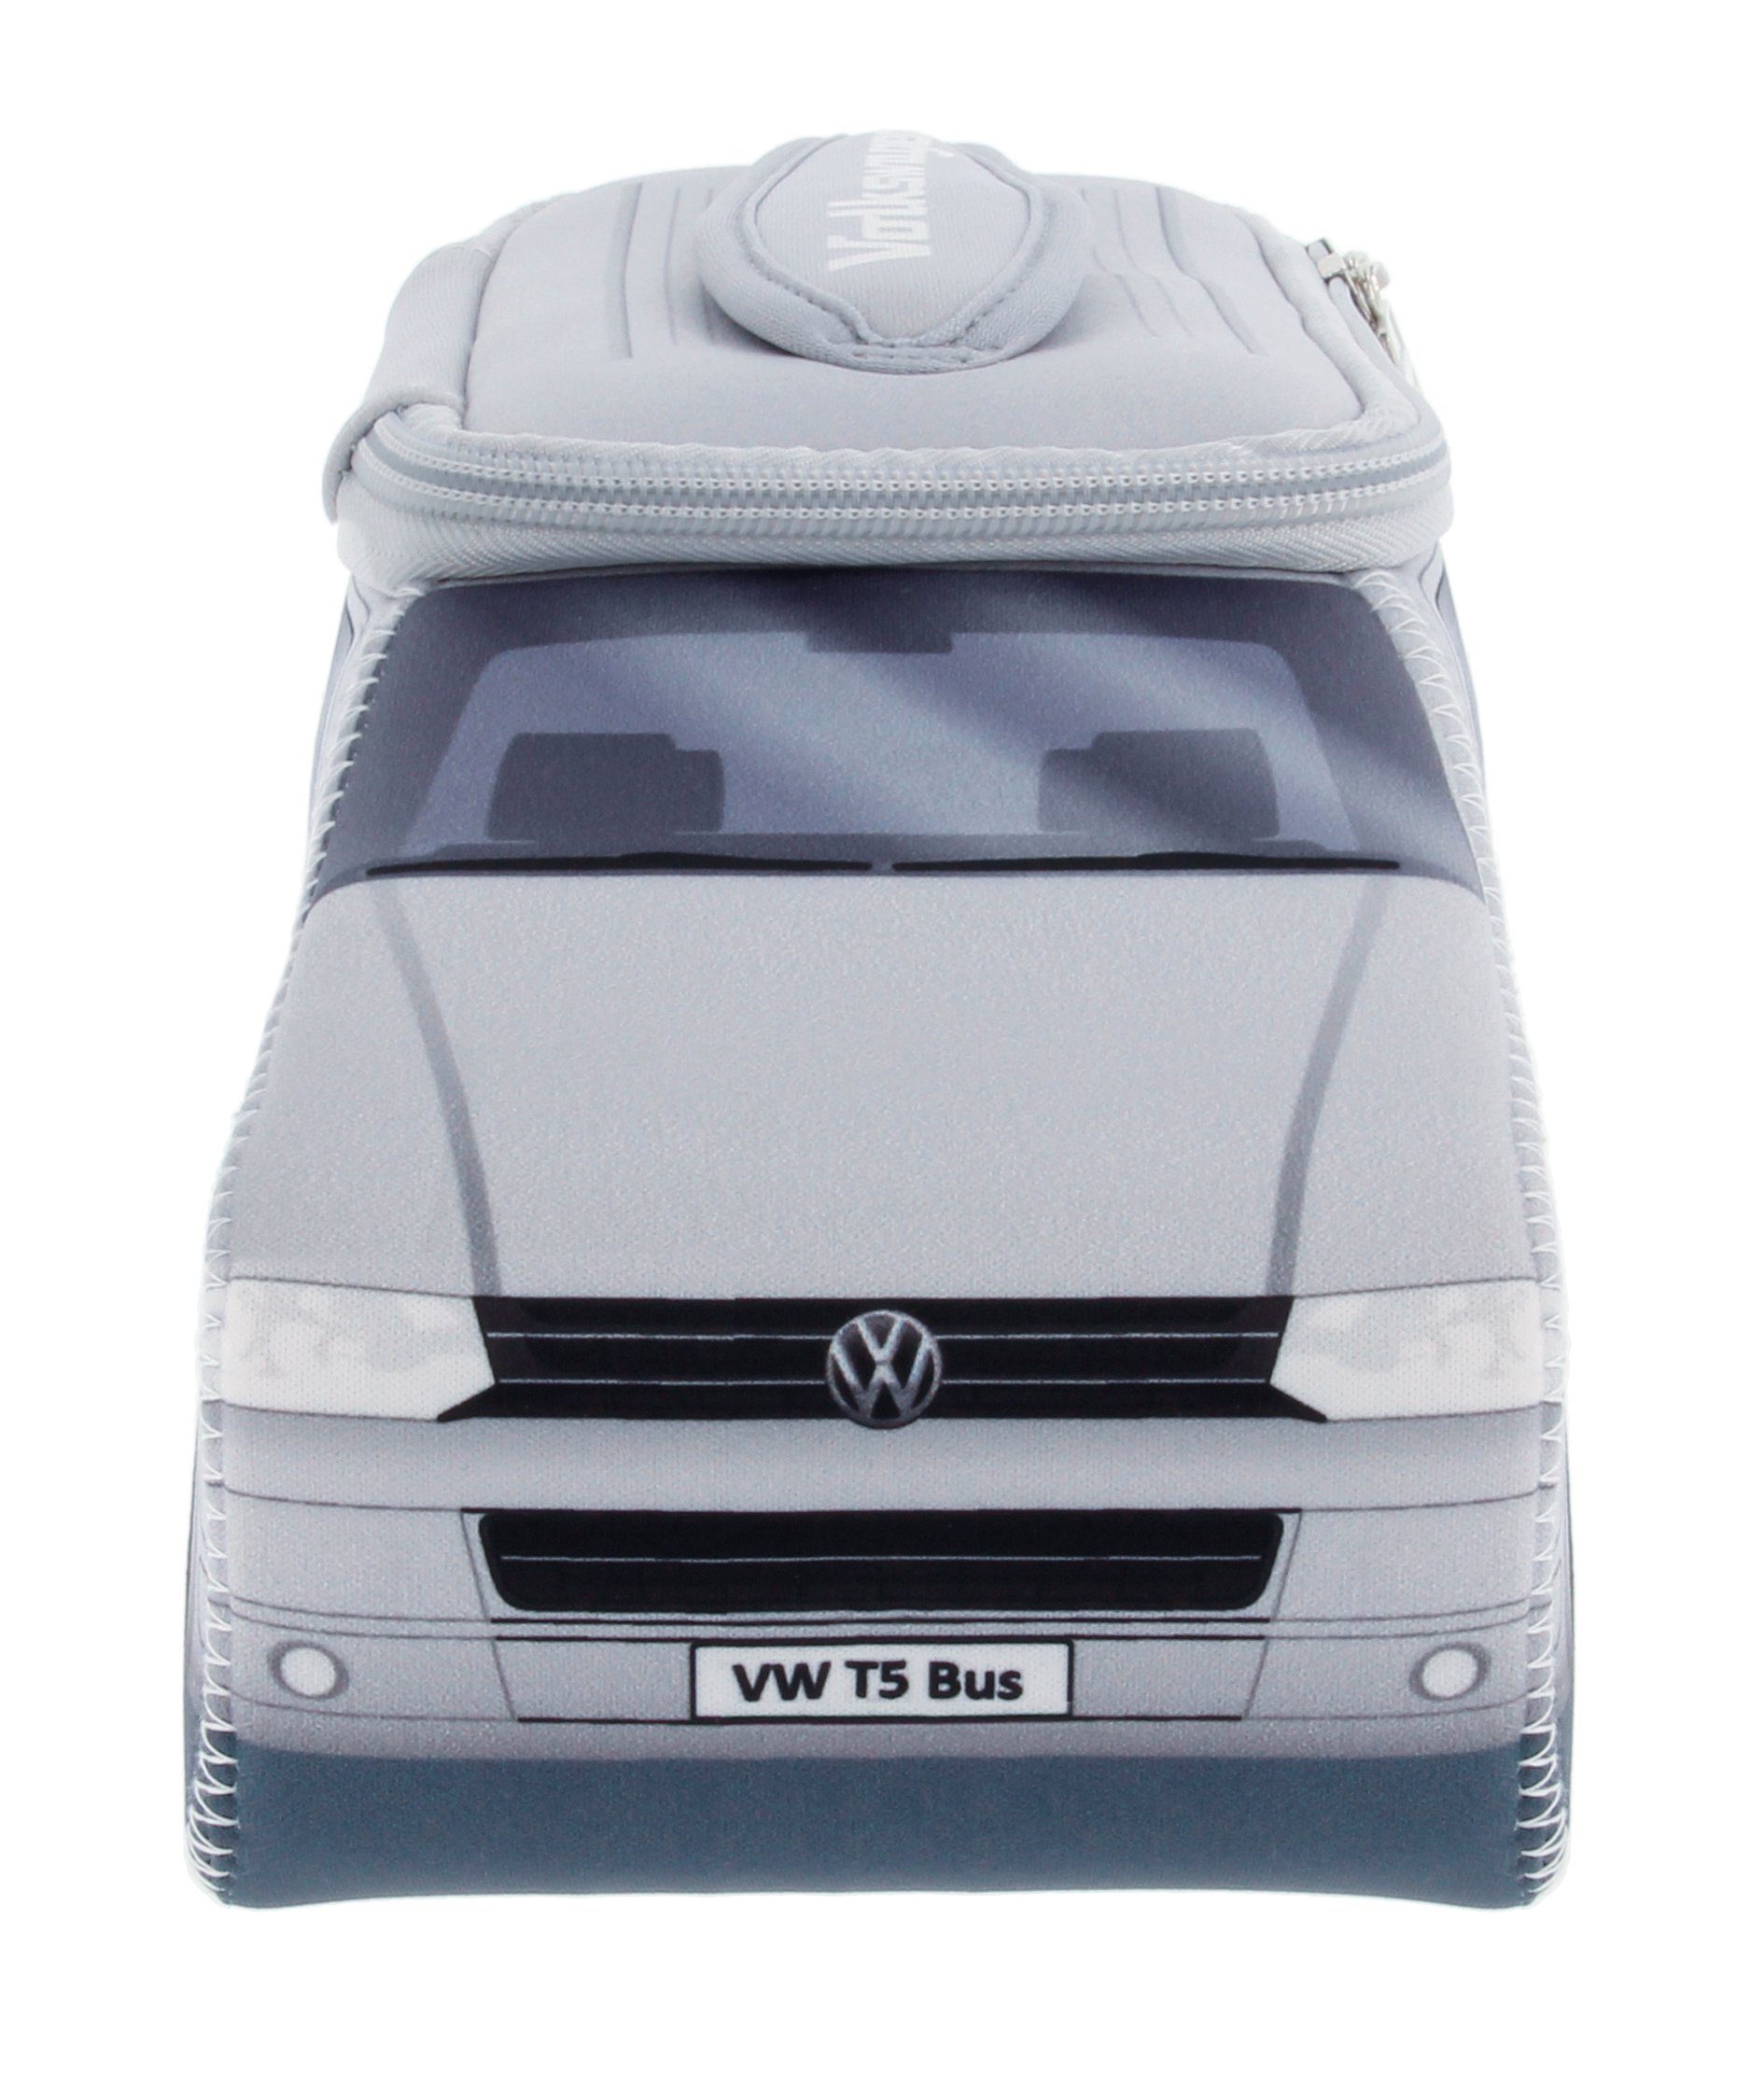 VW Collection by BRISA Kosmetiktasche Volkswagen Universaltasche im VW Bulli T5 Design, Universaltasche aus Neopren, 30 x 14 x 12 cm Silber